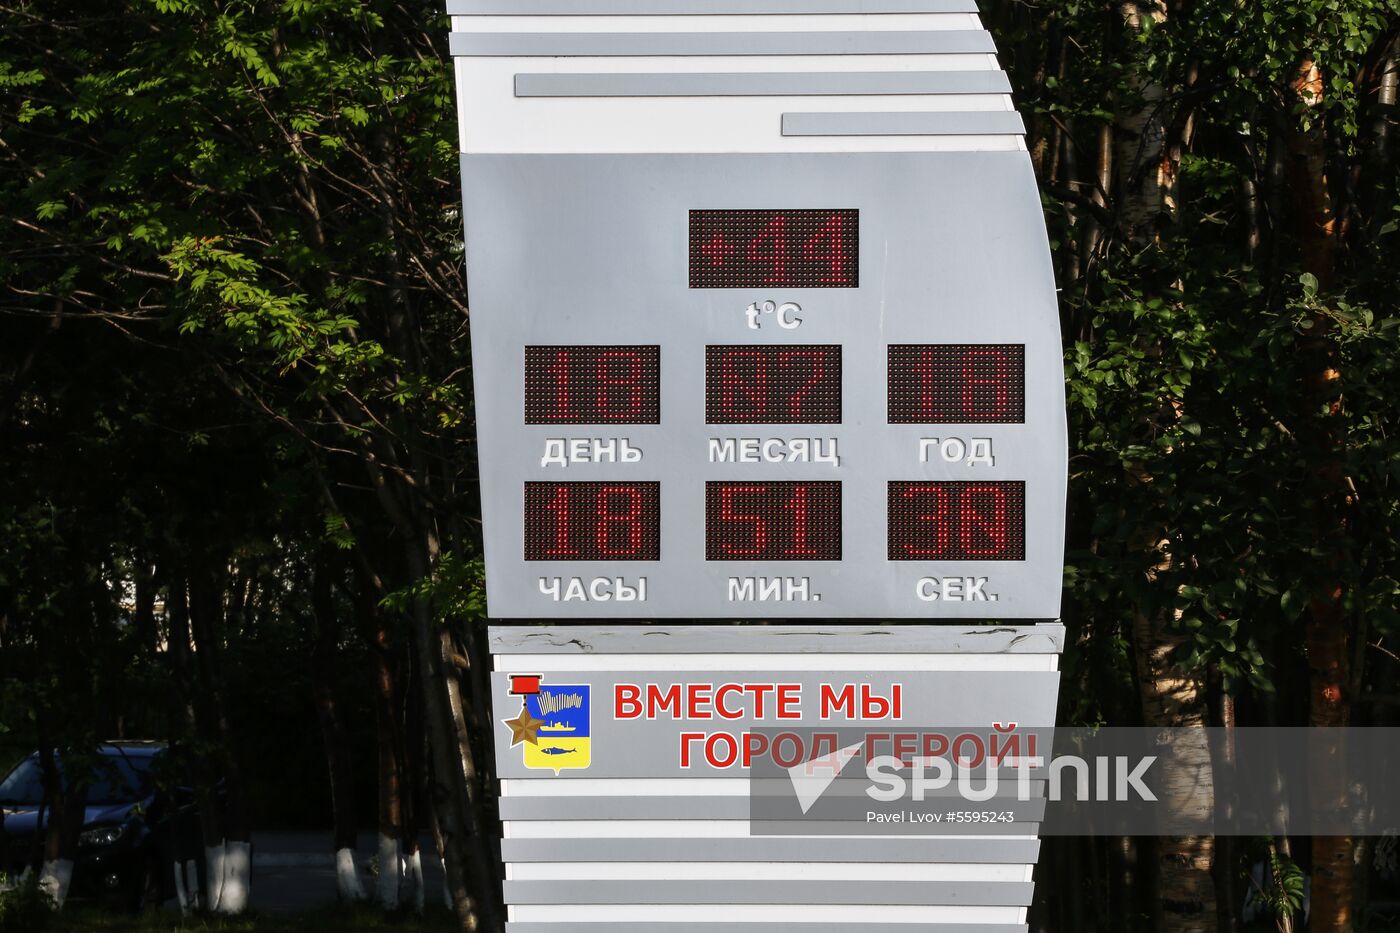 Temperature record in Murmansk